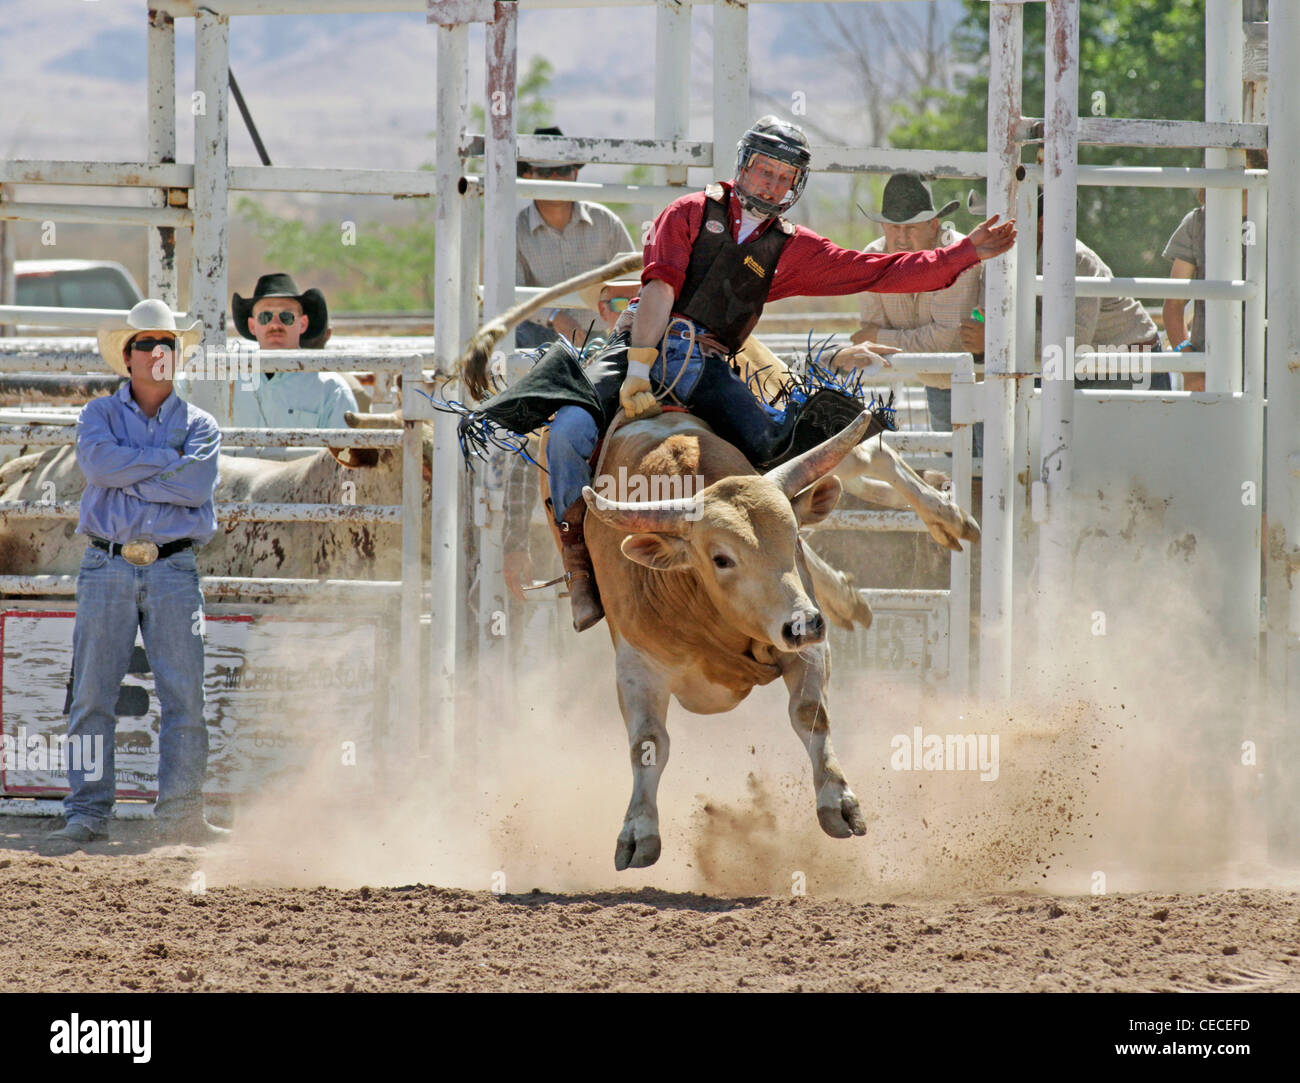 Socorro, Nuovo Messico, Stati Uniti d'America. Concorrente prendendo parte al toro di equitazione concorrenza durante il rodeo annuale. Foto Stock